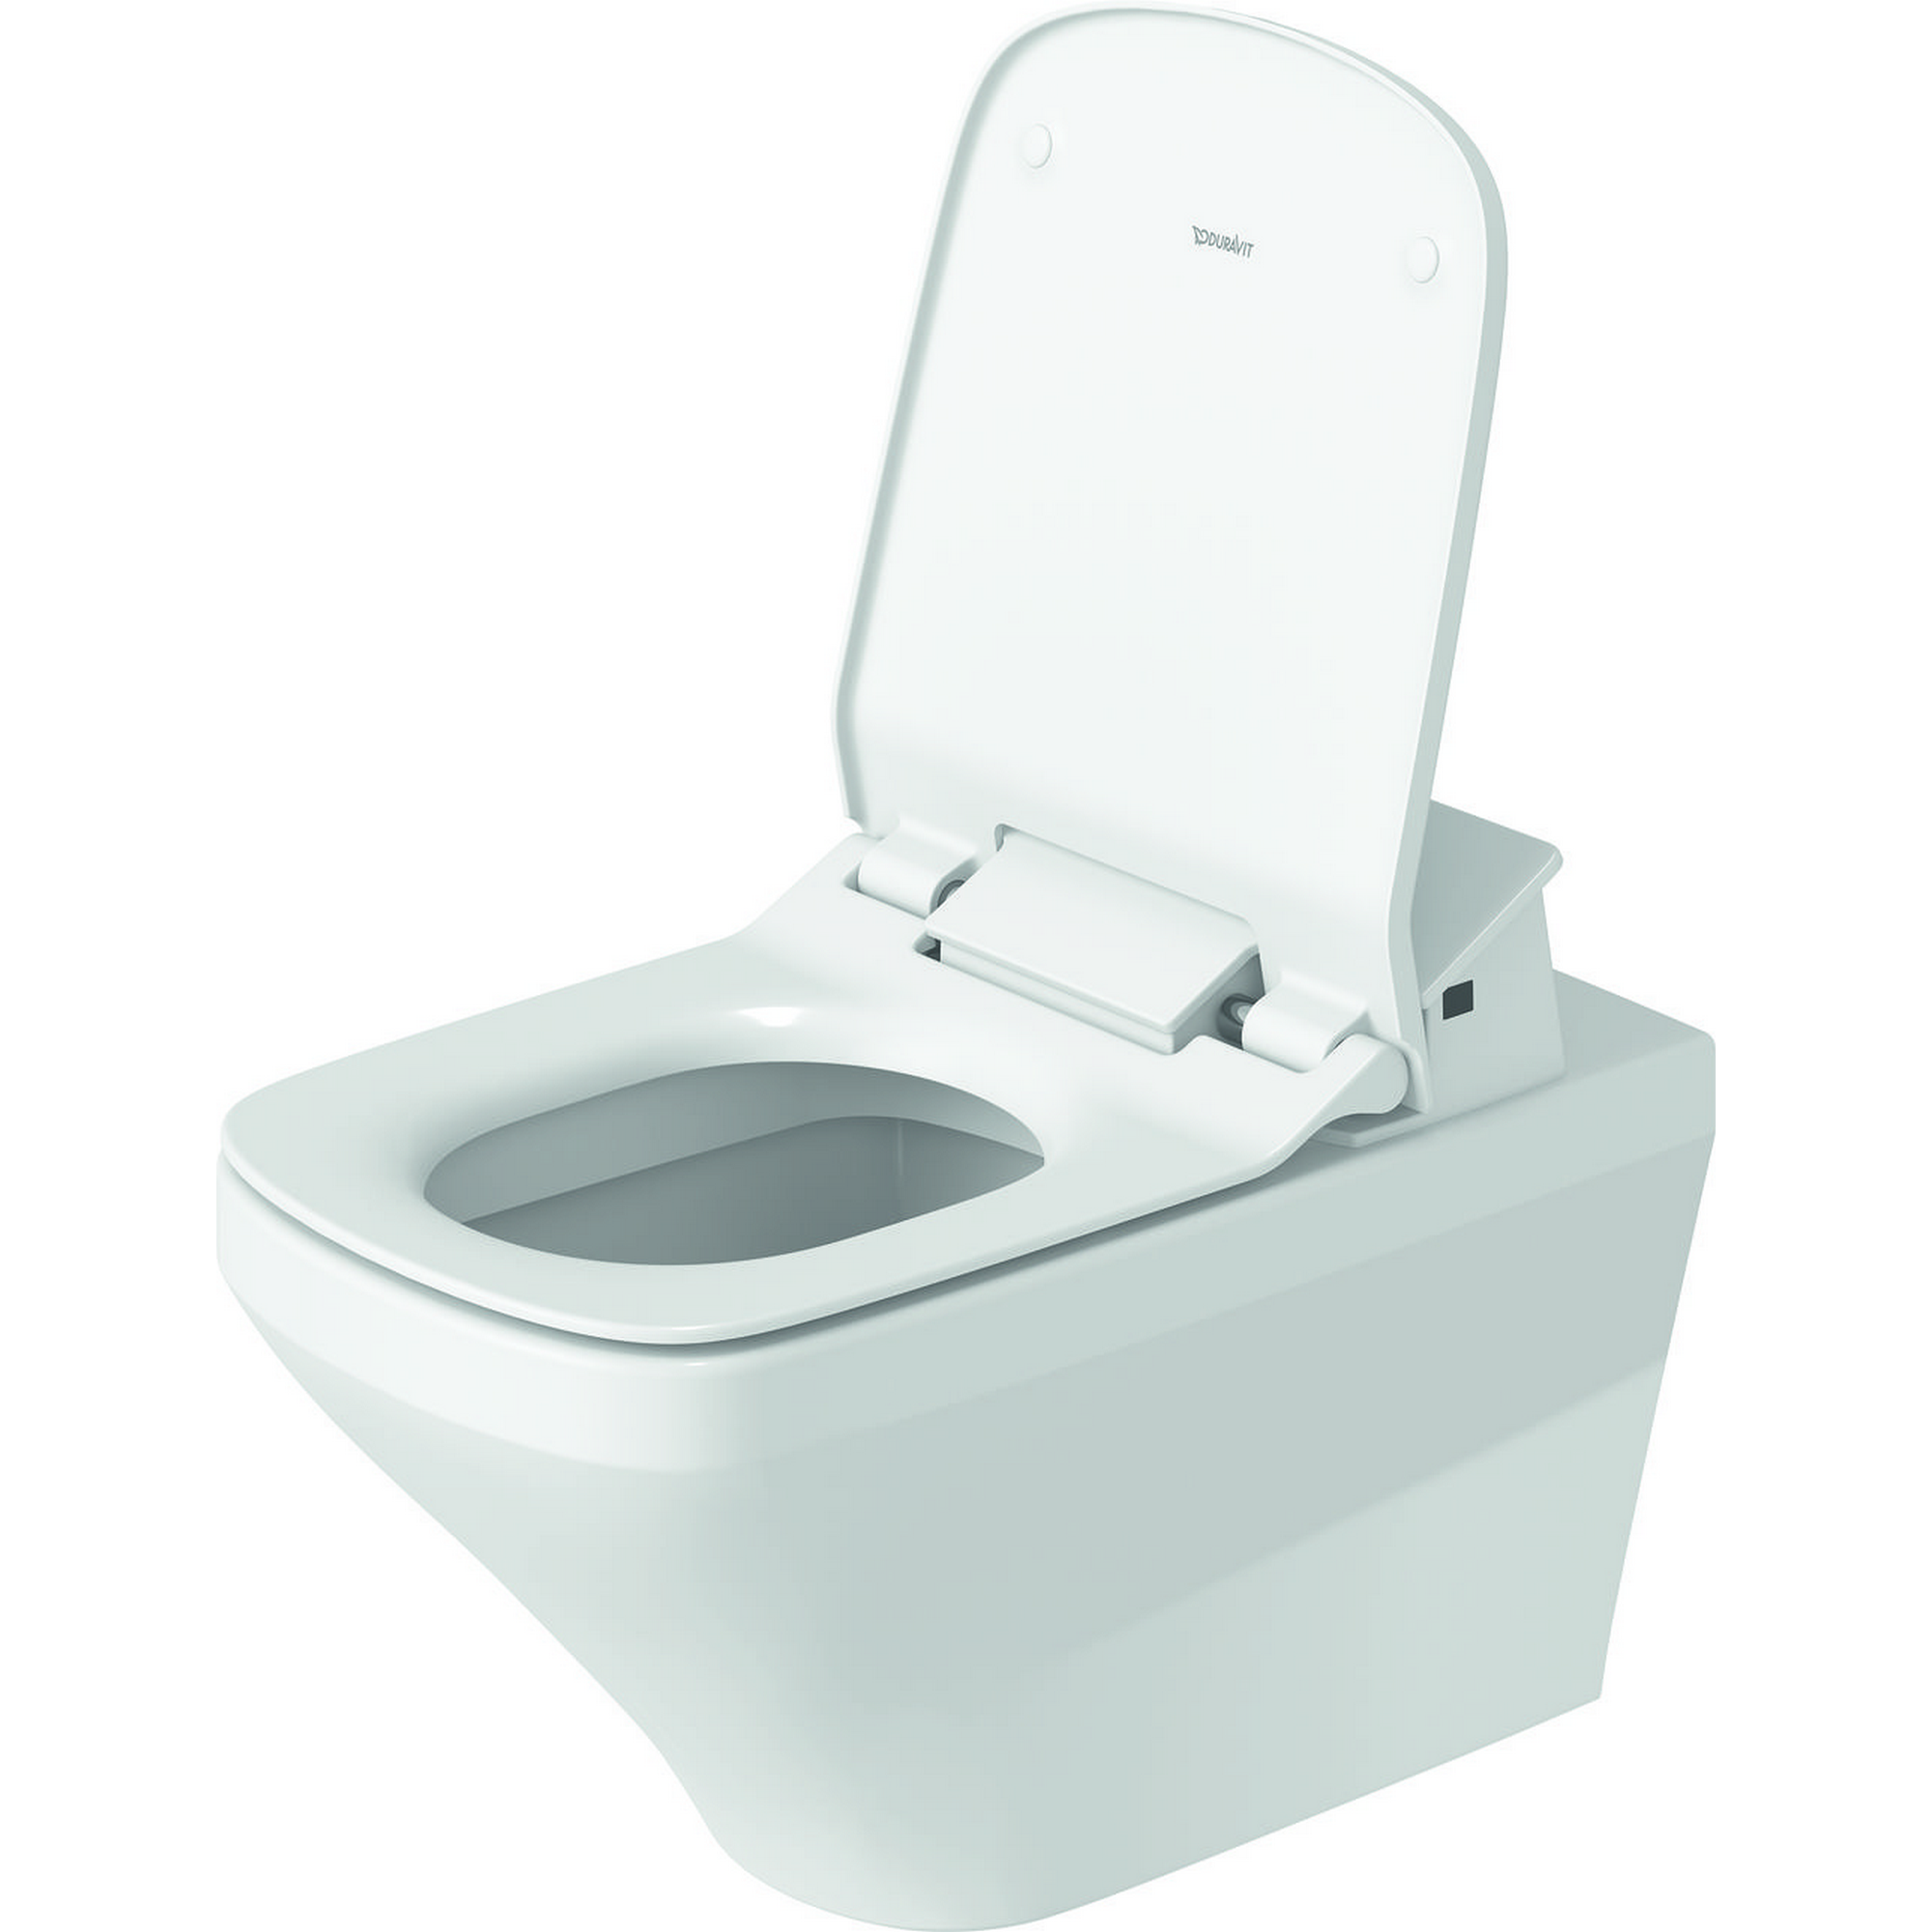 Wand-WC-Set 'DuraStyle Sensowash-Slim' mit Dusch-WC-Sitz + product picture